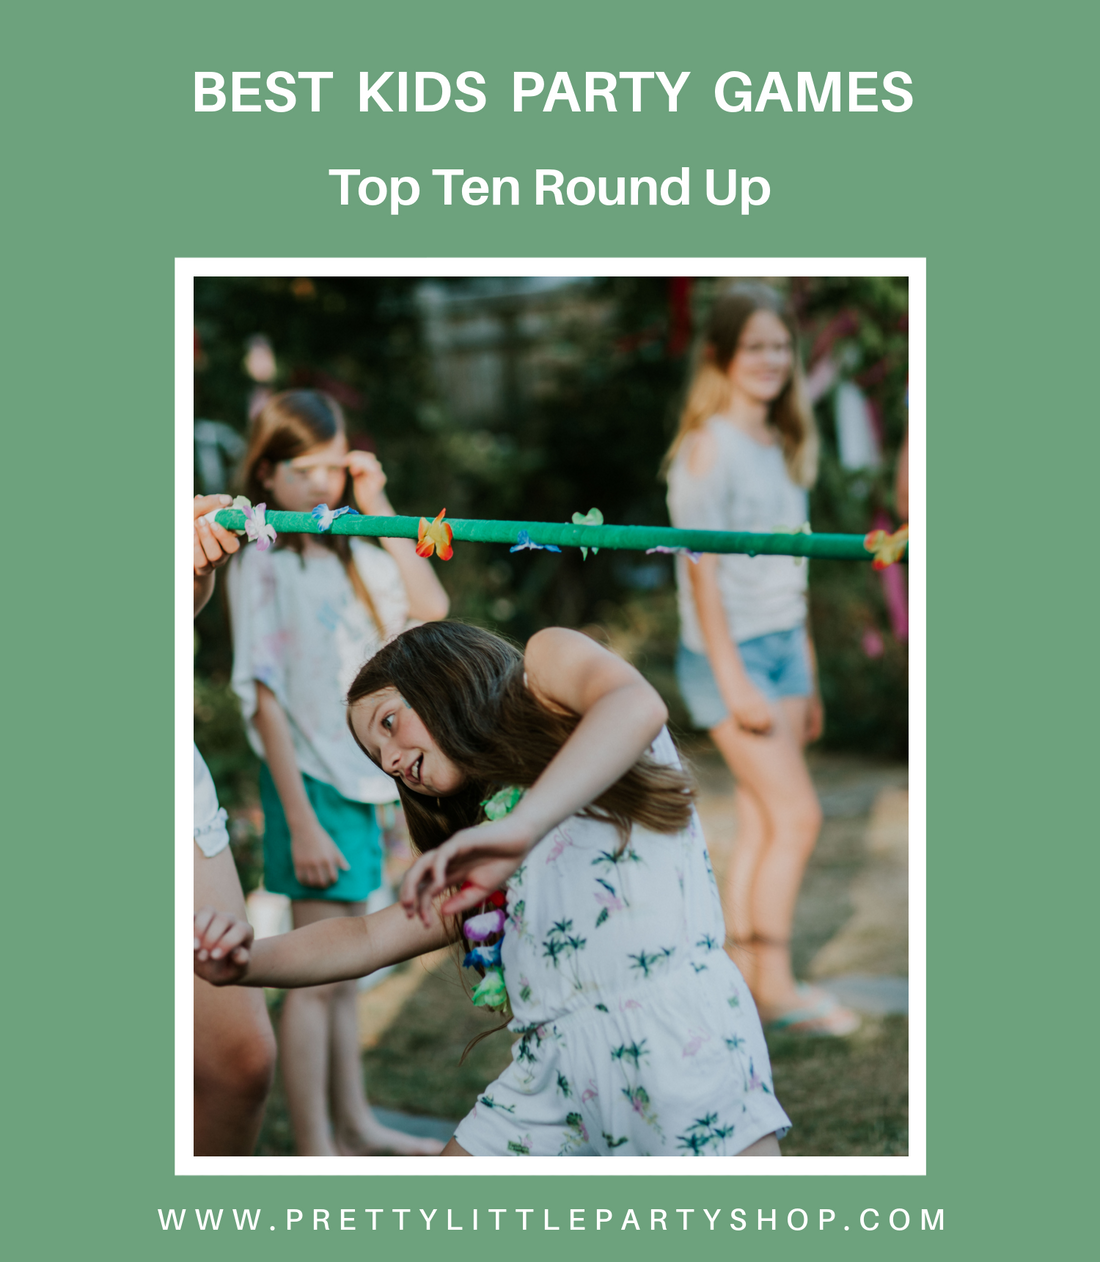 Best Kids Party Games - Top Ten